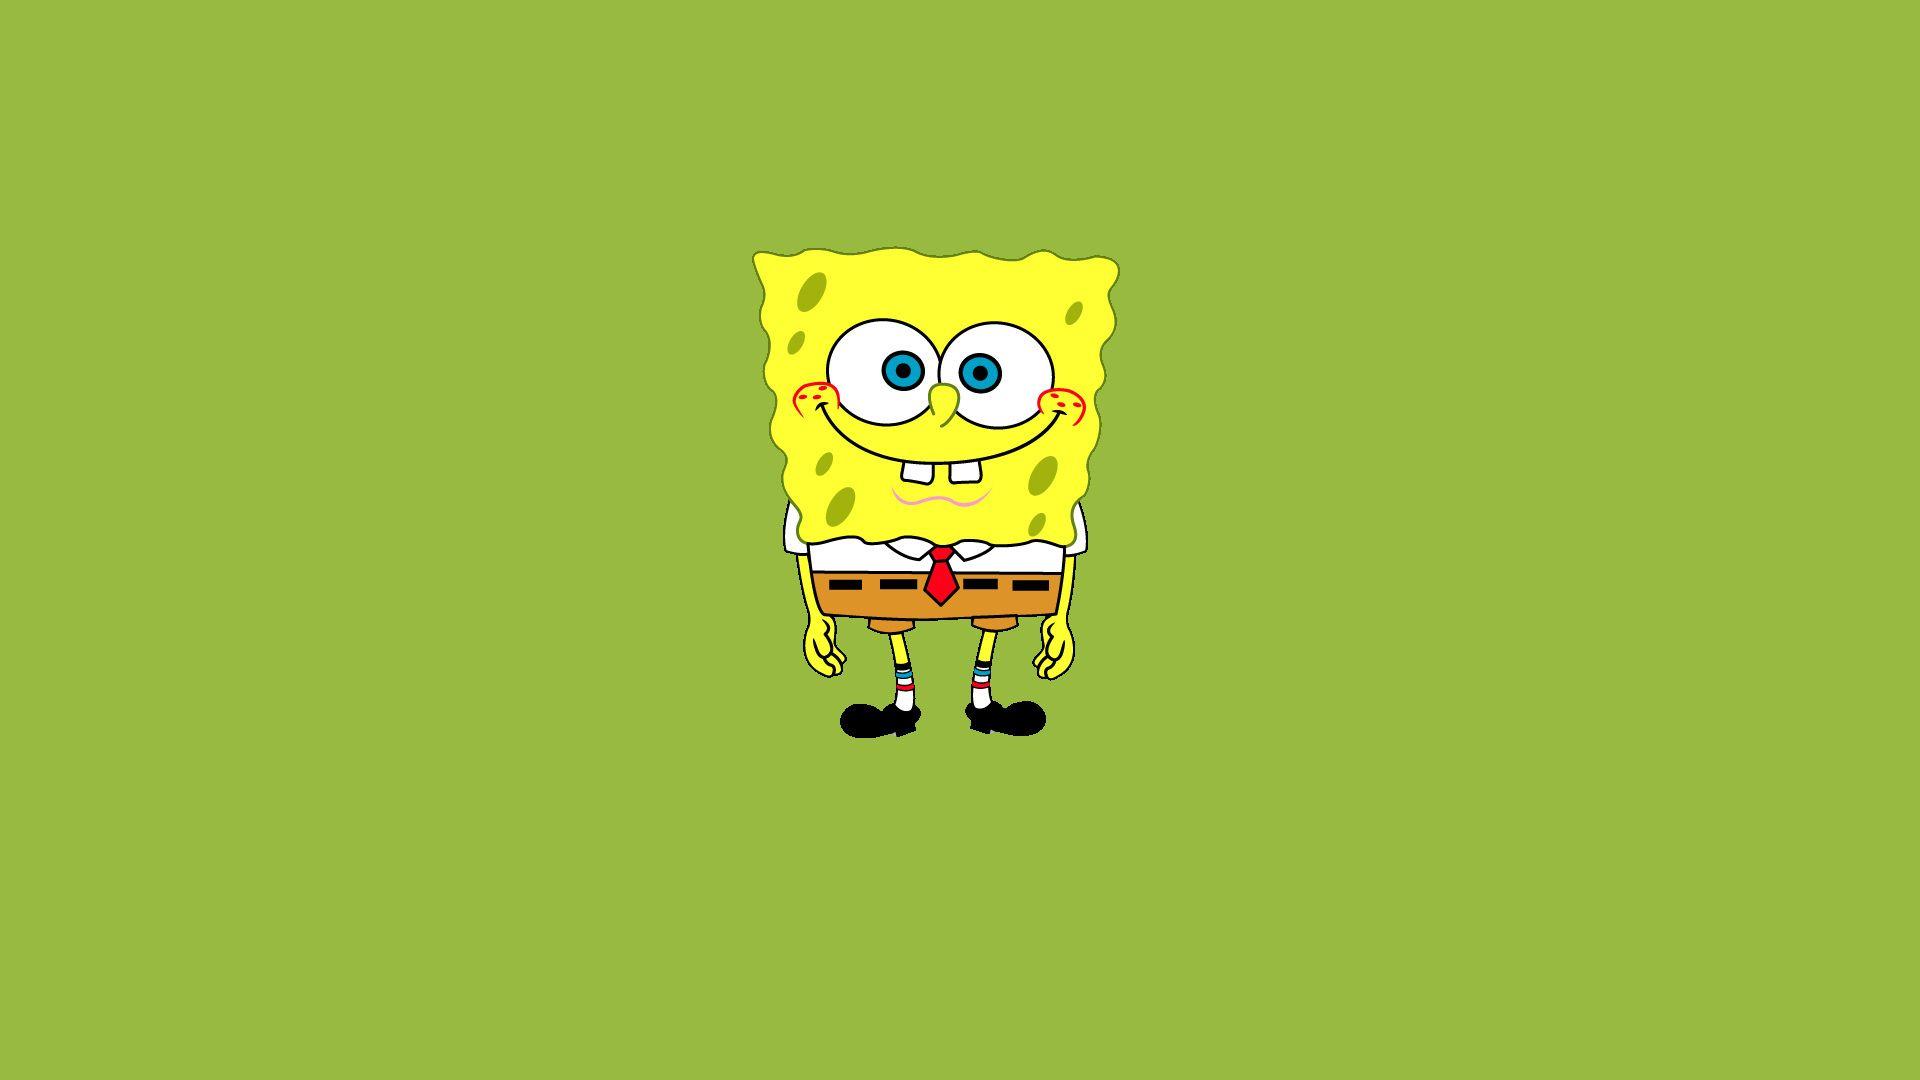 Cool SpongeBob SquarePants Wallpaper